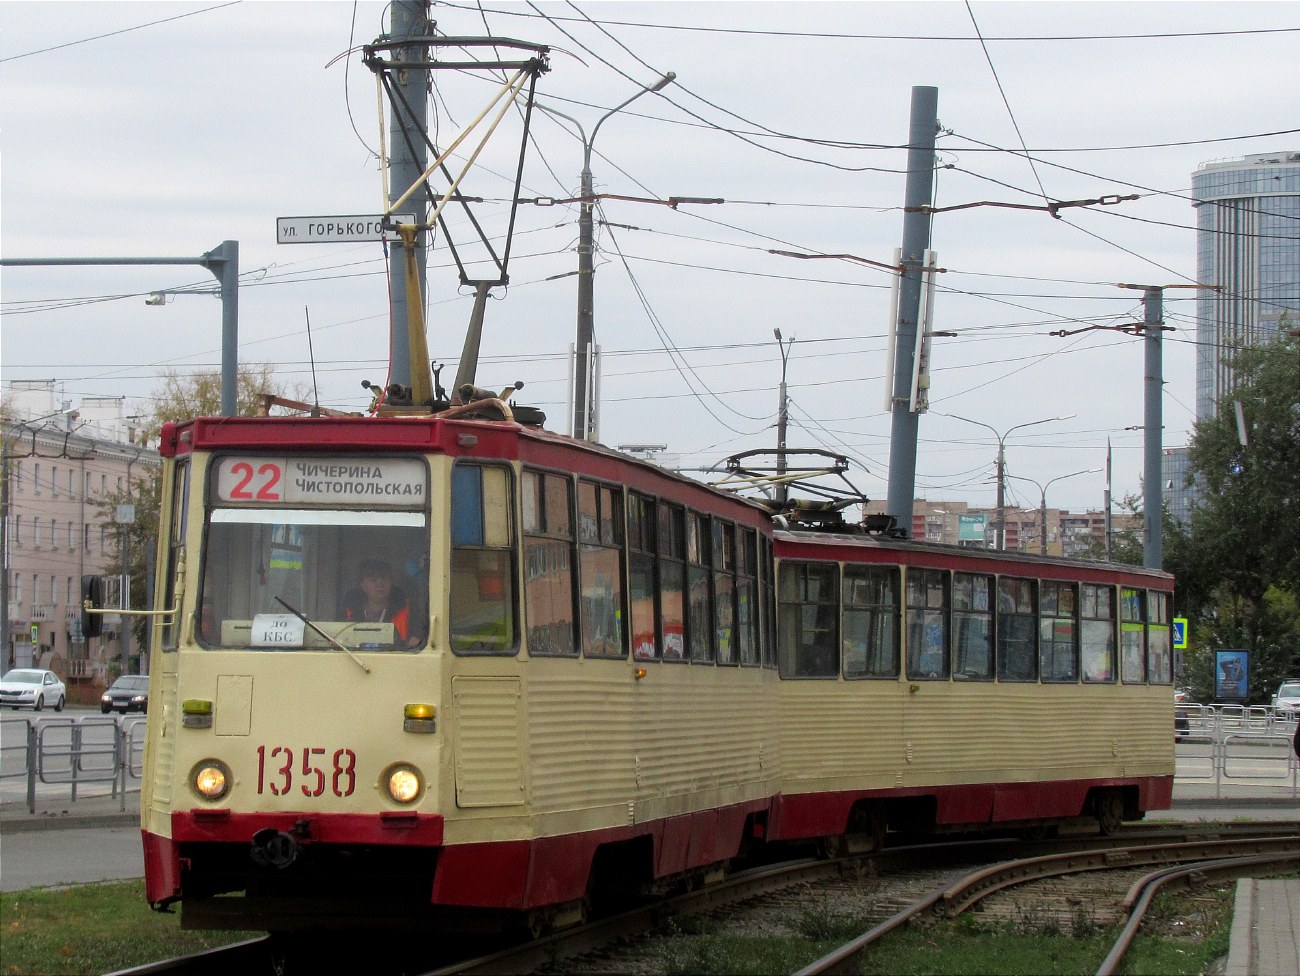 Челябинск, 71-605А № 1358